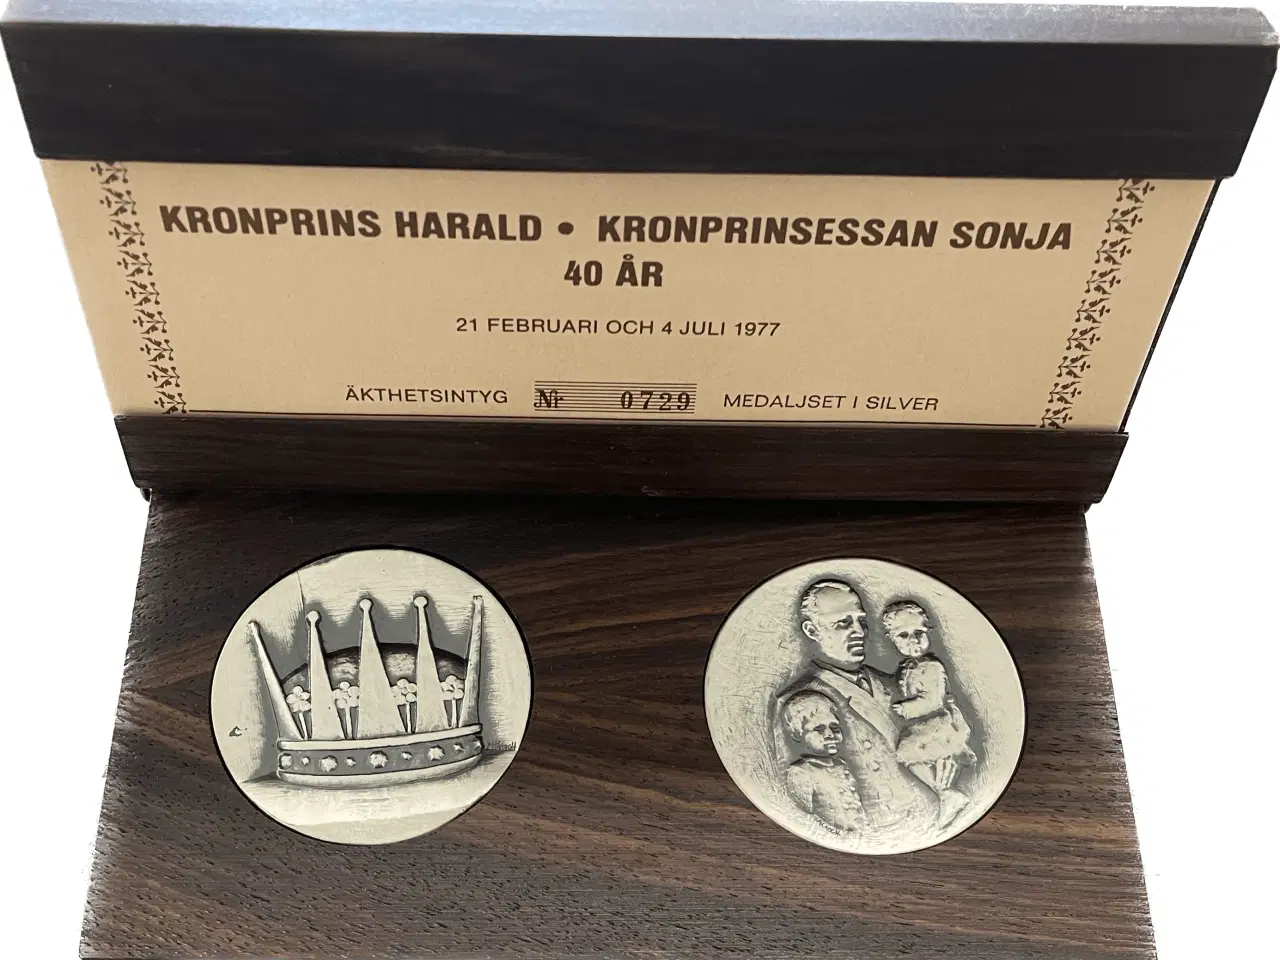 Billede 1 - Smukt Medalje sæt- Kronprins Harald og Kronprinsessan sonja 40 år